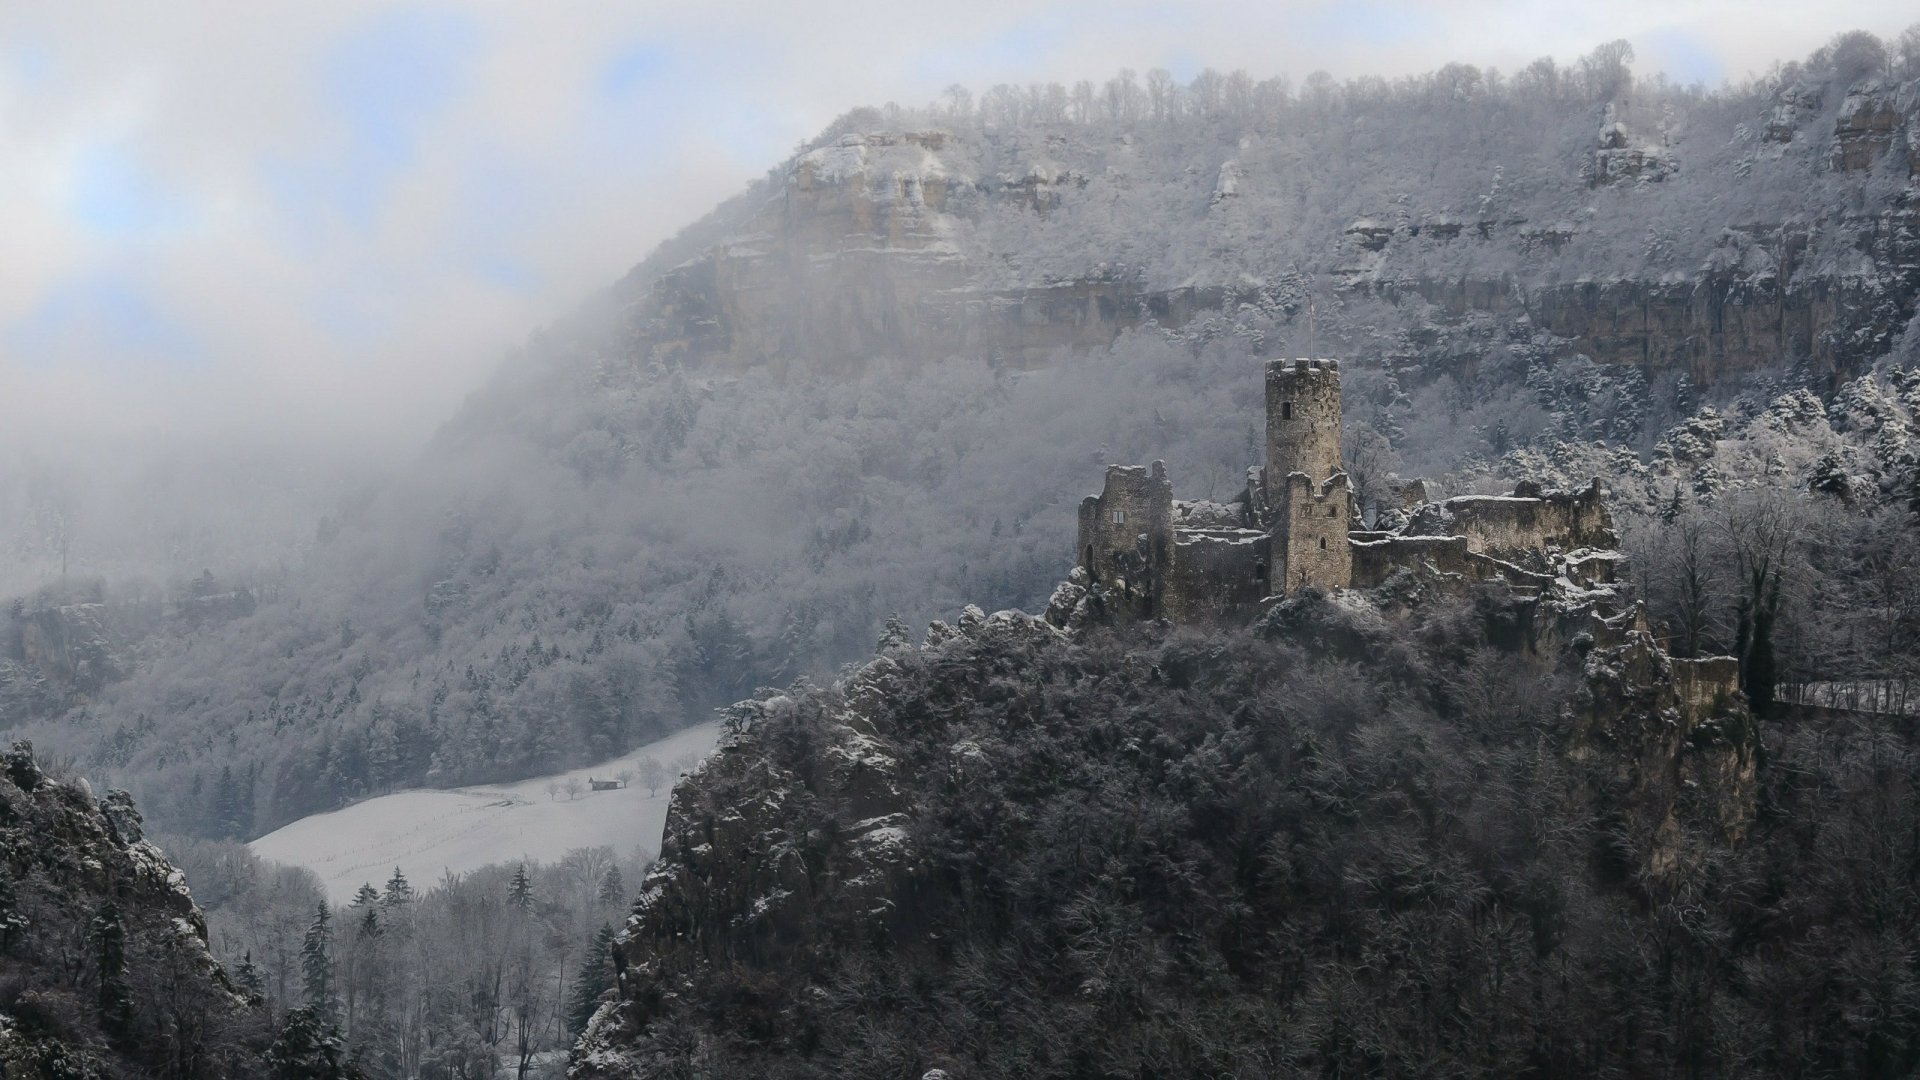 Замок в горах арт фото